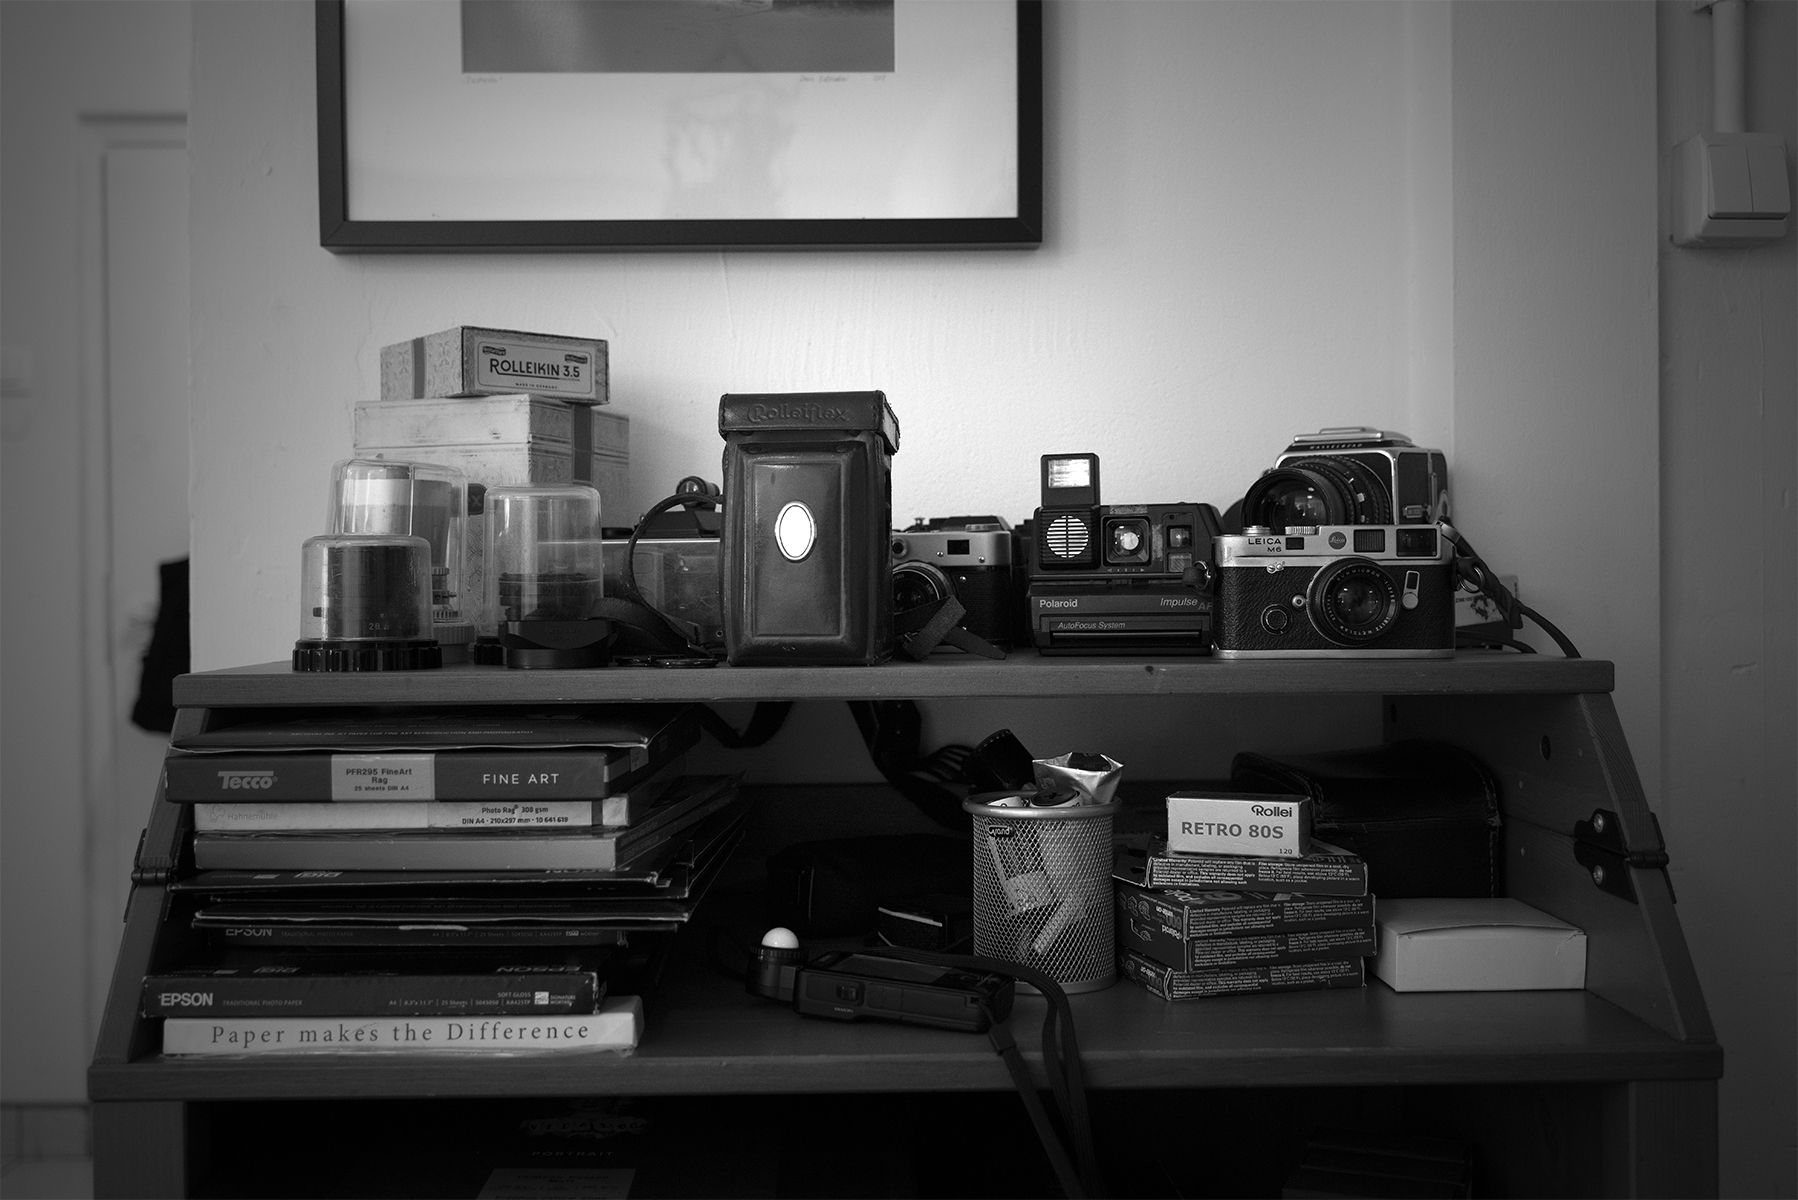 Zdjęcie przedstawia półki z albumami fotograficznymi oraz wyposażeniem pracowni: aparatami, światłomierzem, negatywami